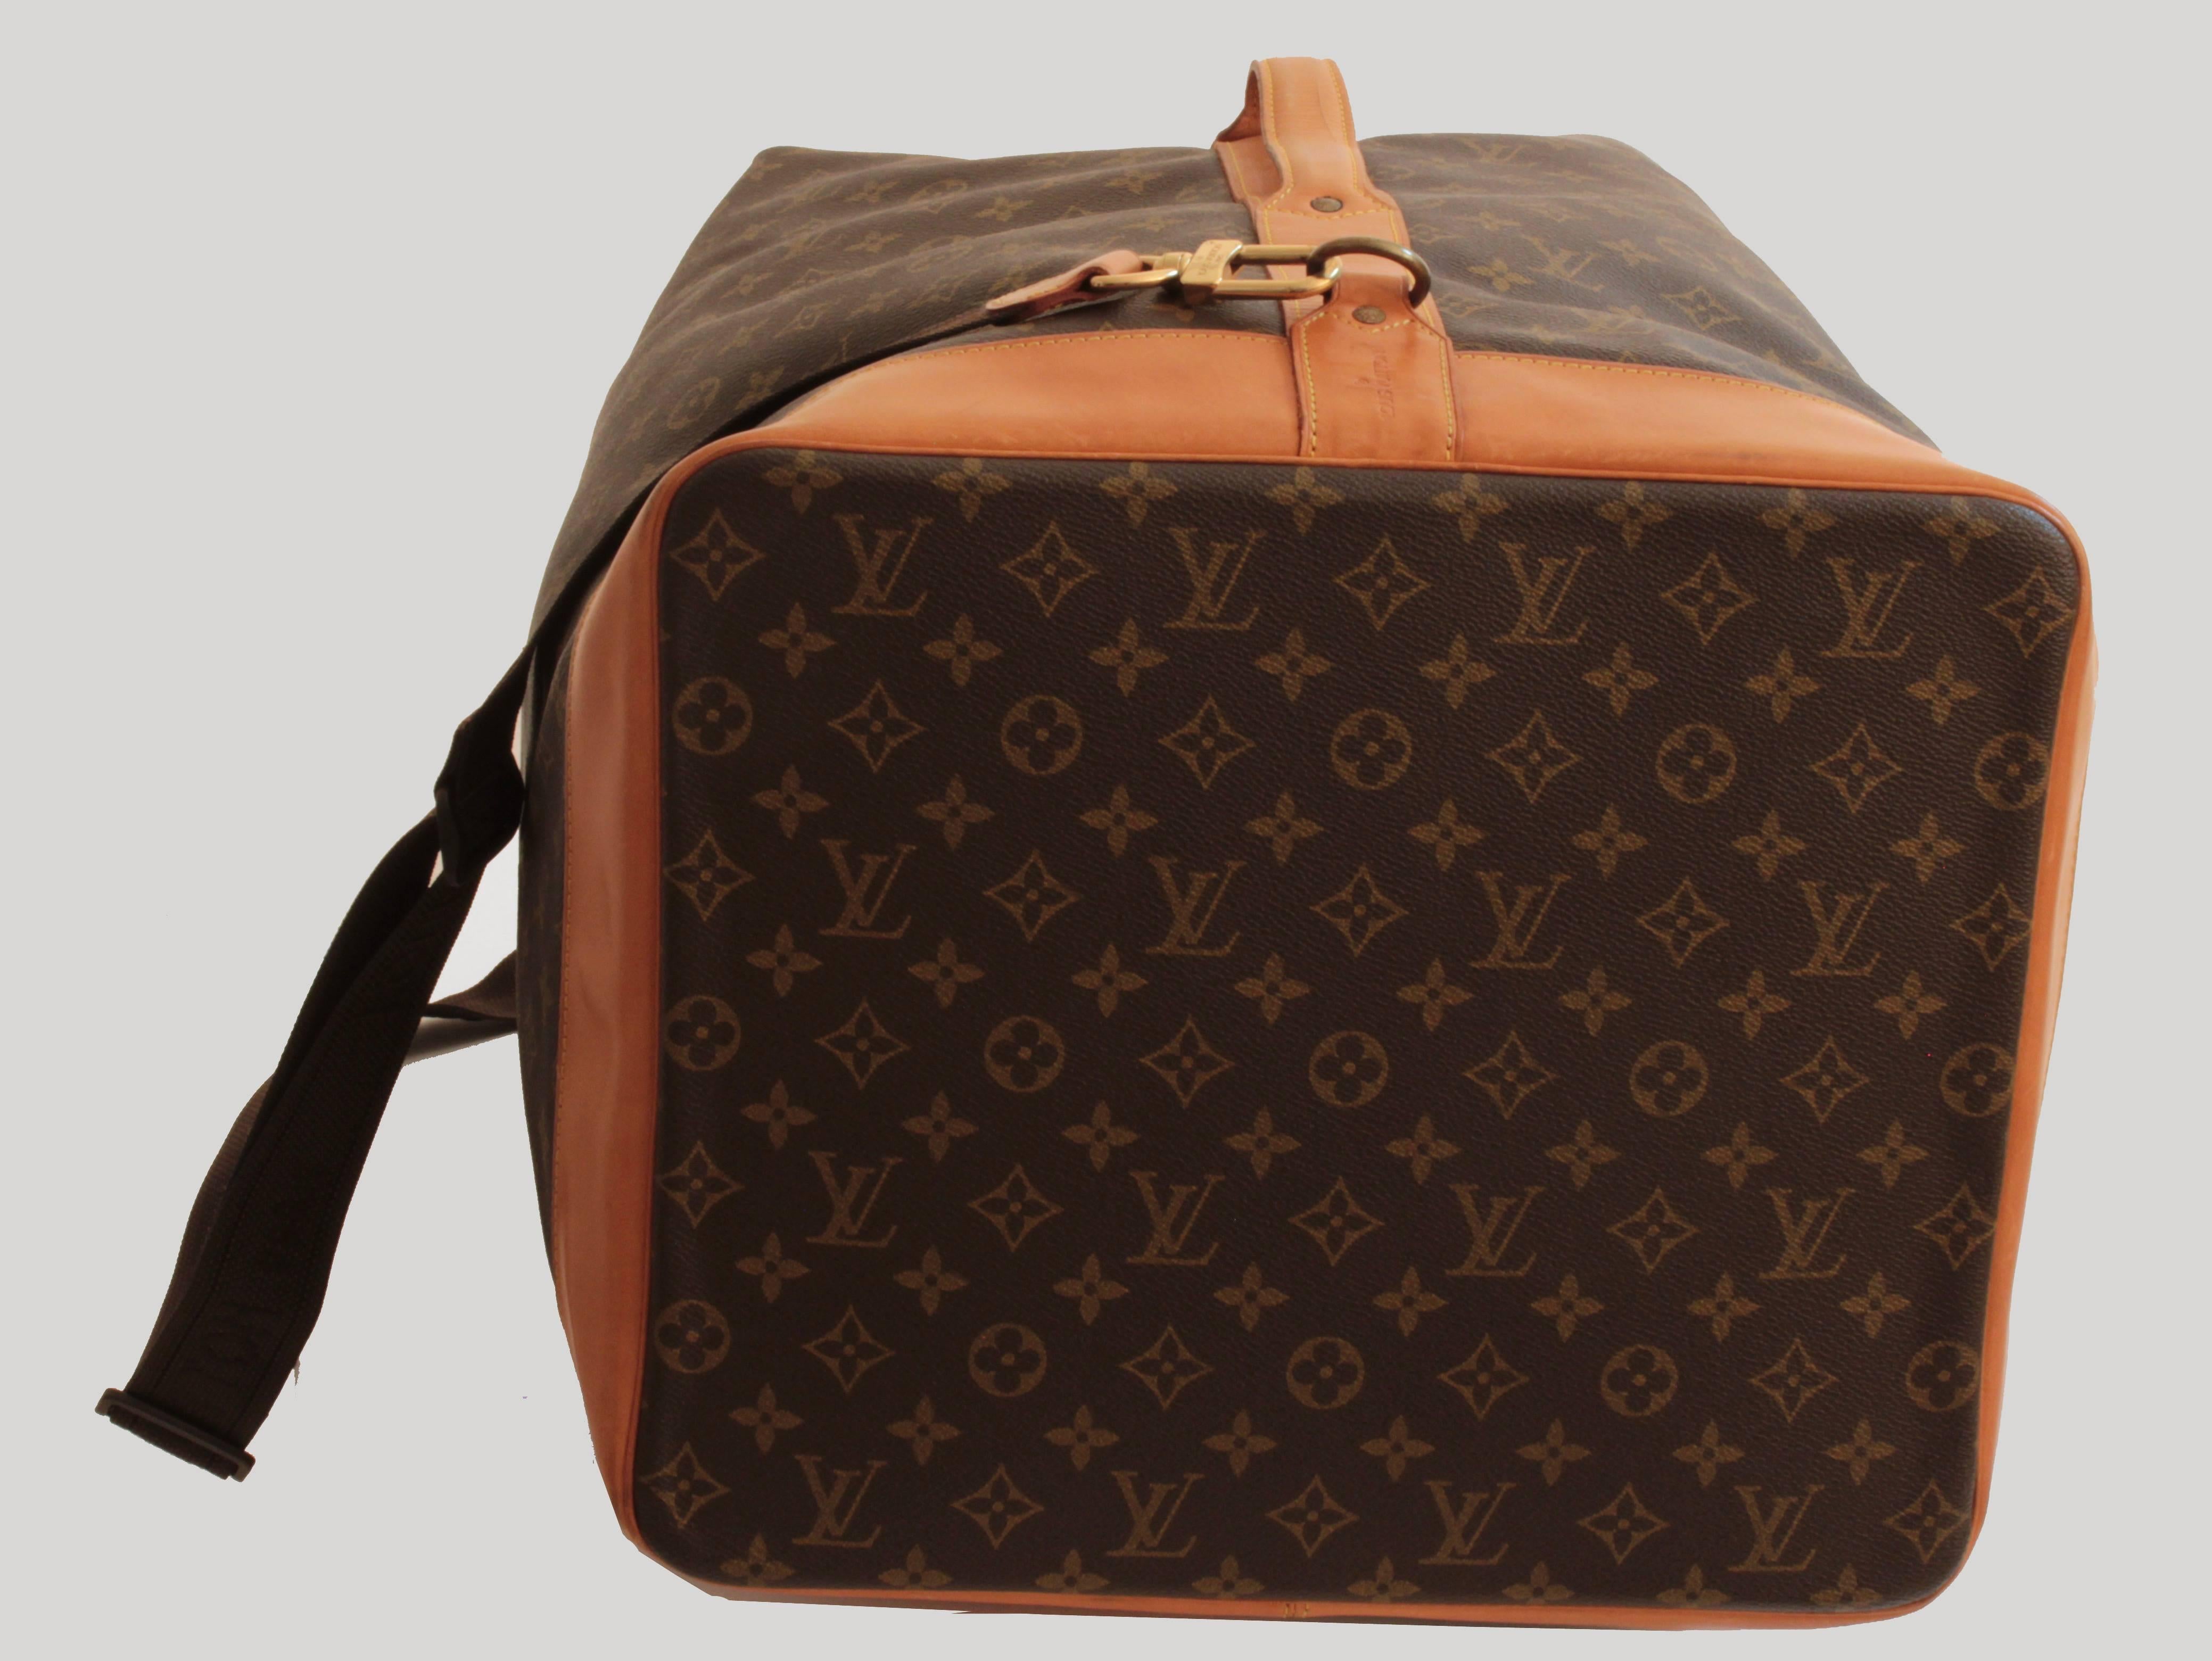 Brown Louis Vuitton Monogram Sac Marin Large Duffle Bag XL Travel Tote Vintage 90s 